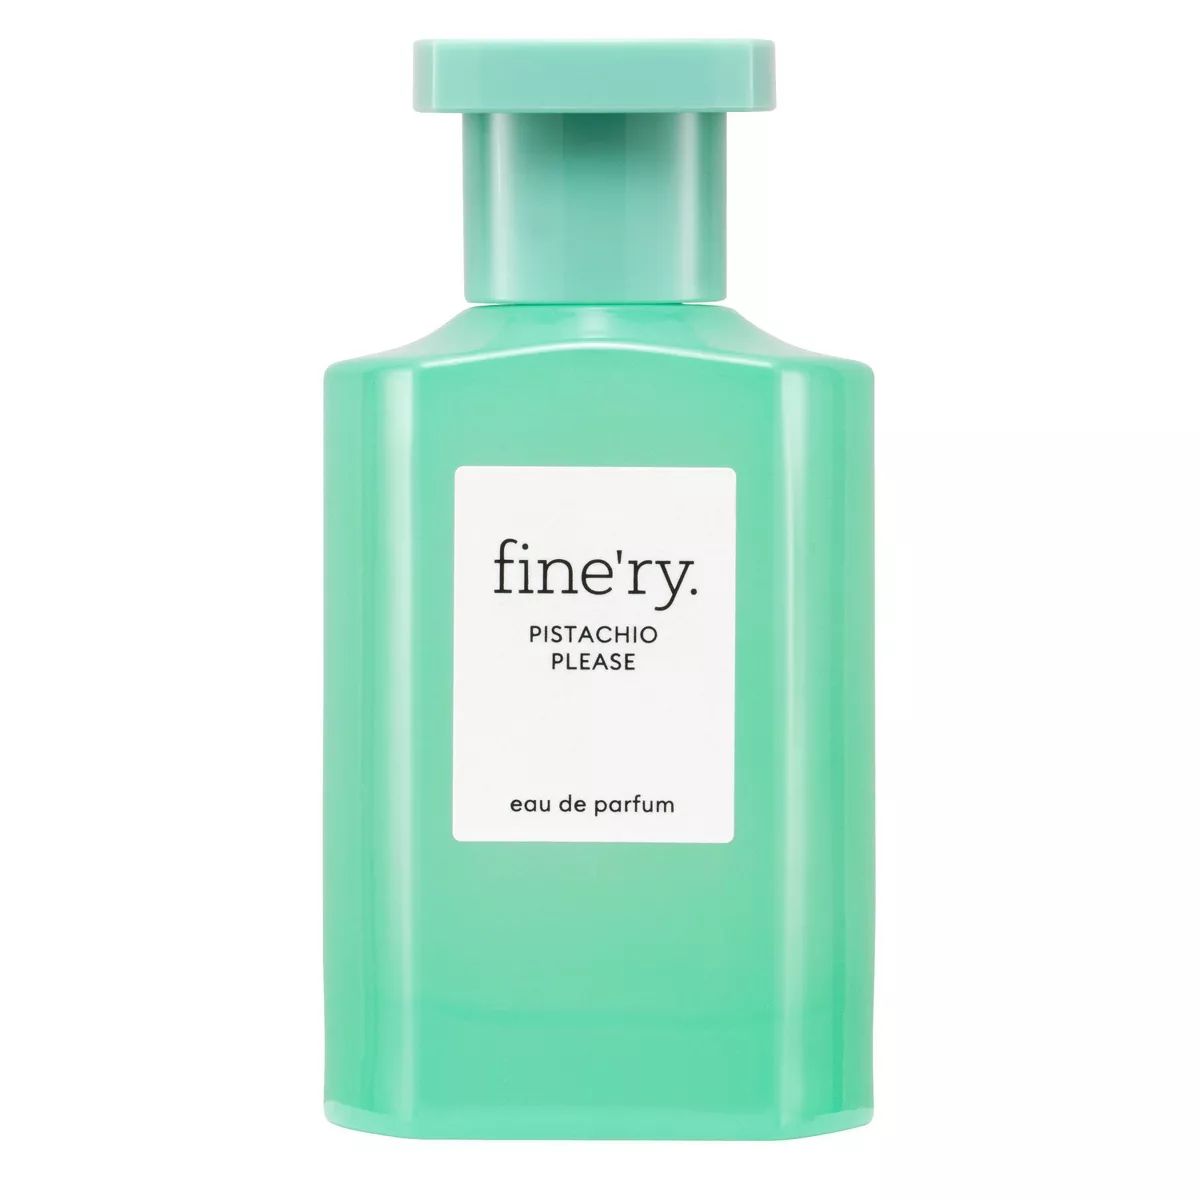 fine'ry. Eau de Women's Parfum Perfume - Pistachio Please - 2 fl oz | Target